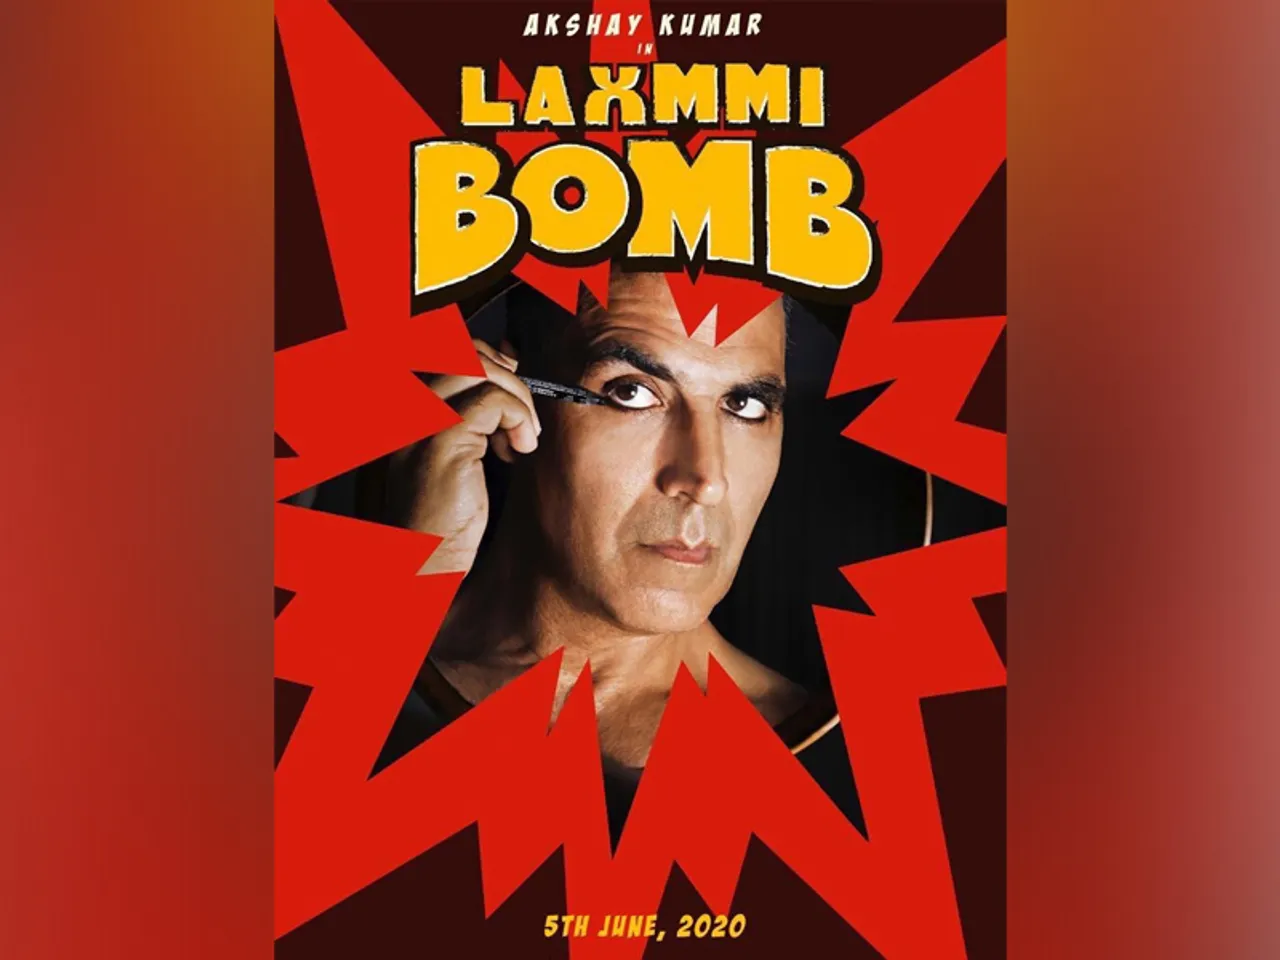 अक्षय कुमार की फिल्म लक्ष्मी बॉम्ब की रिलीज डेट फाइनल, 15 अगस्त को होगी रिलीज